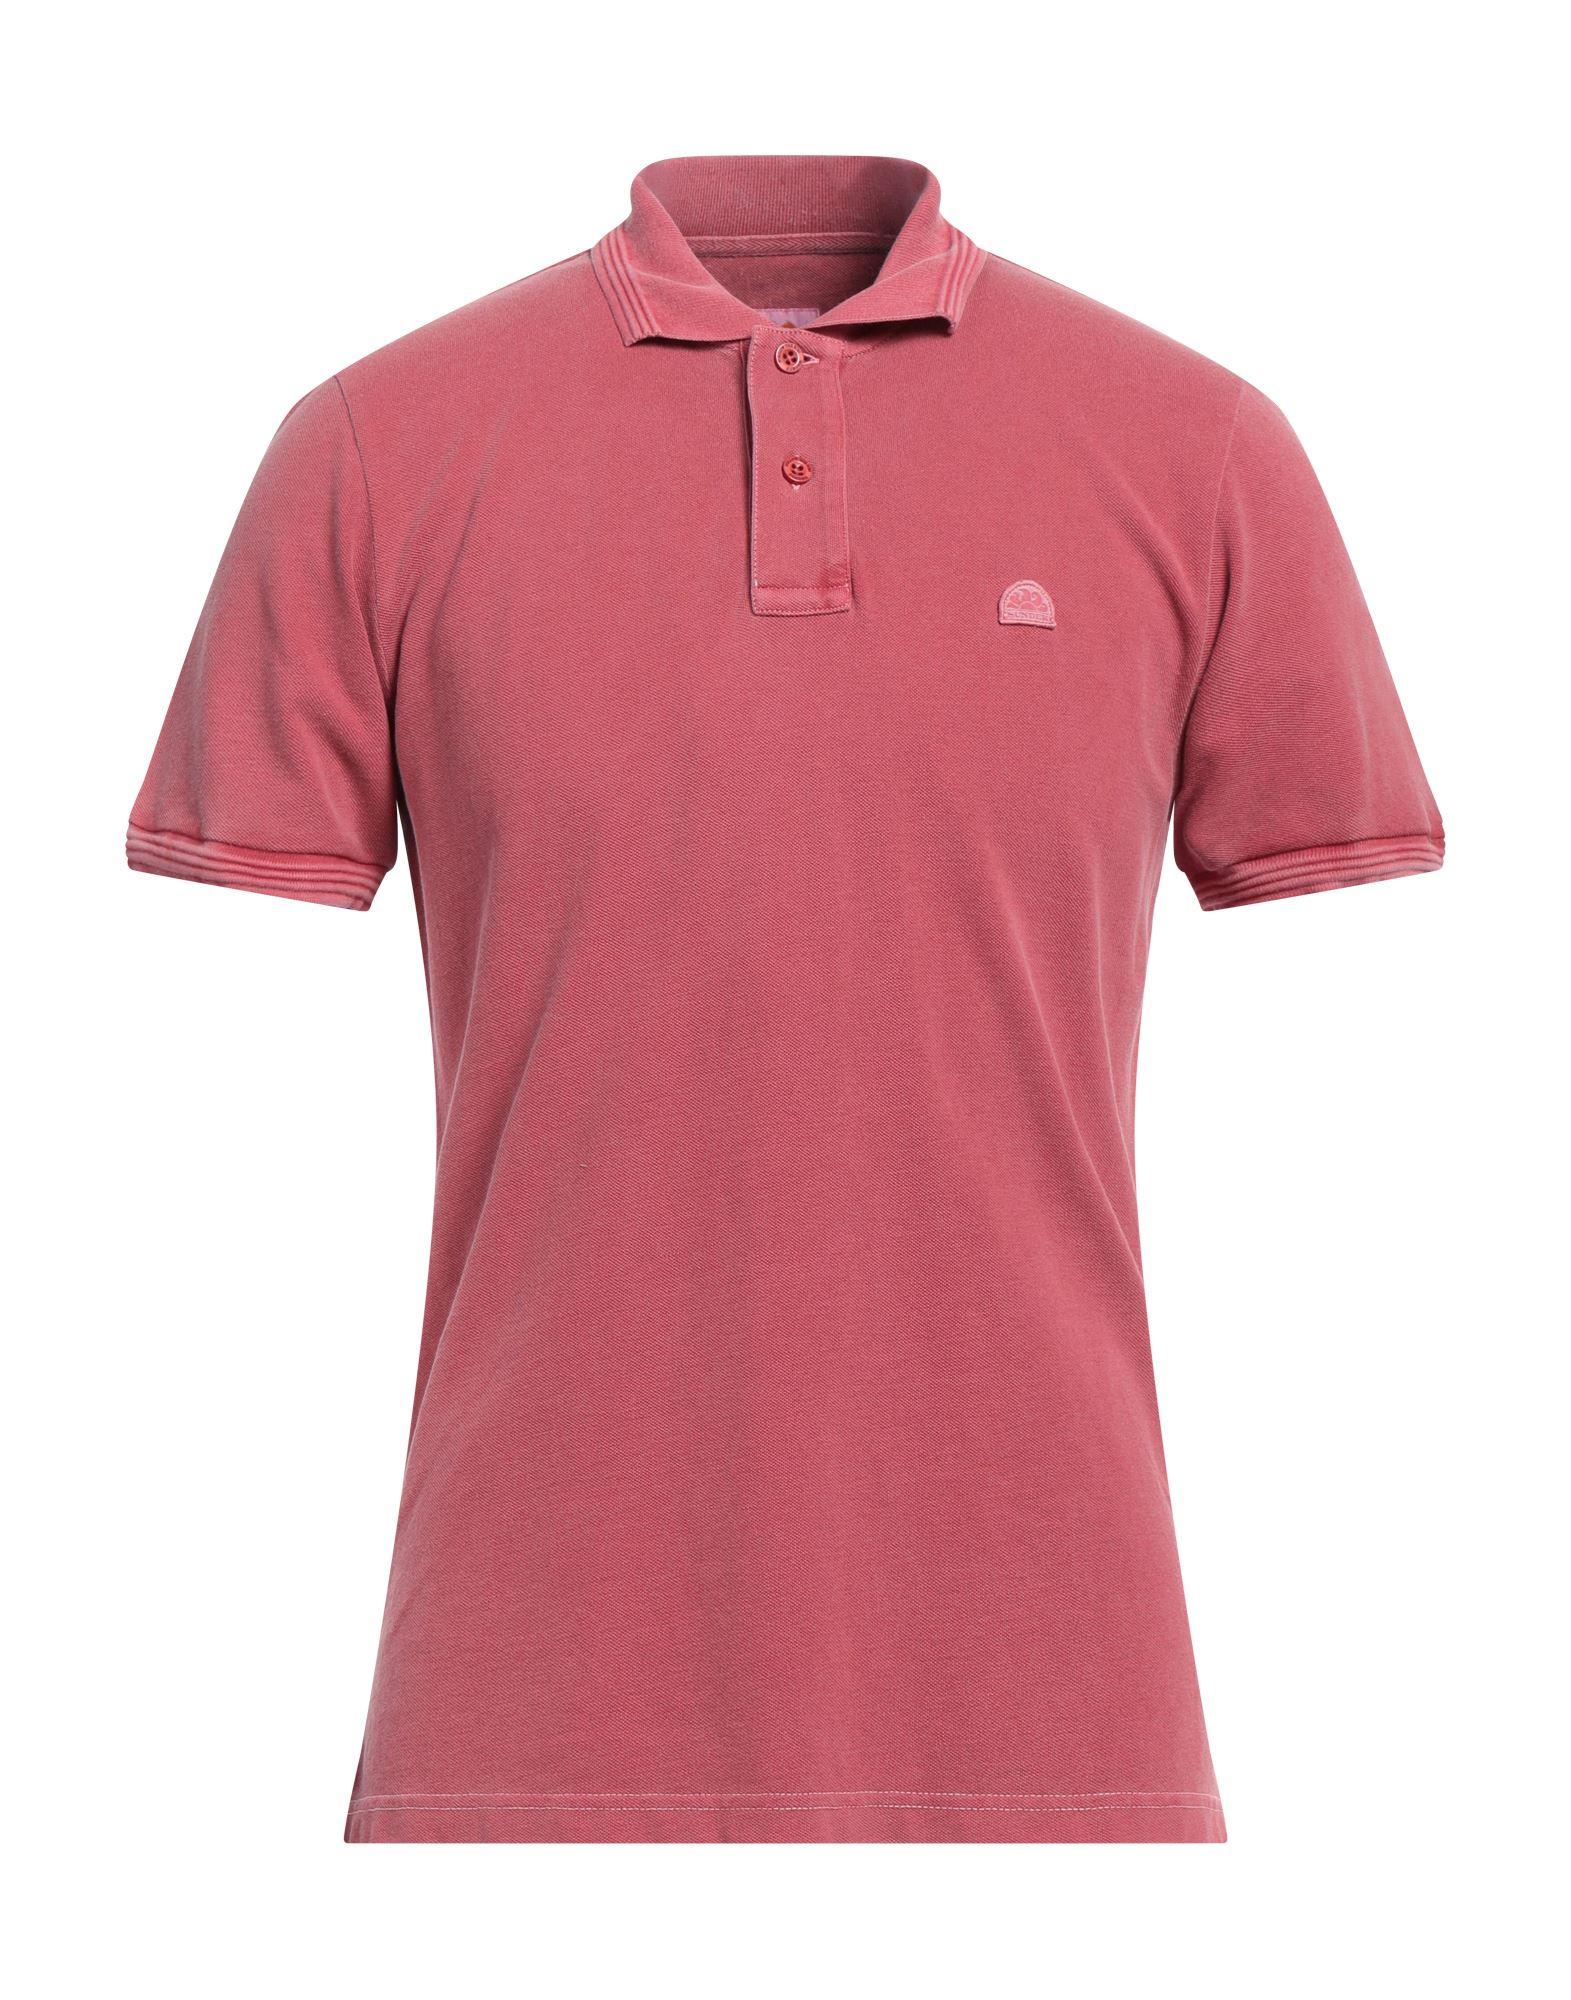 Sundek Polo Shirts In Pink